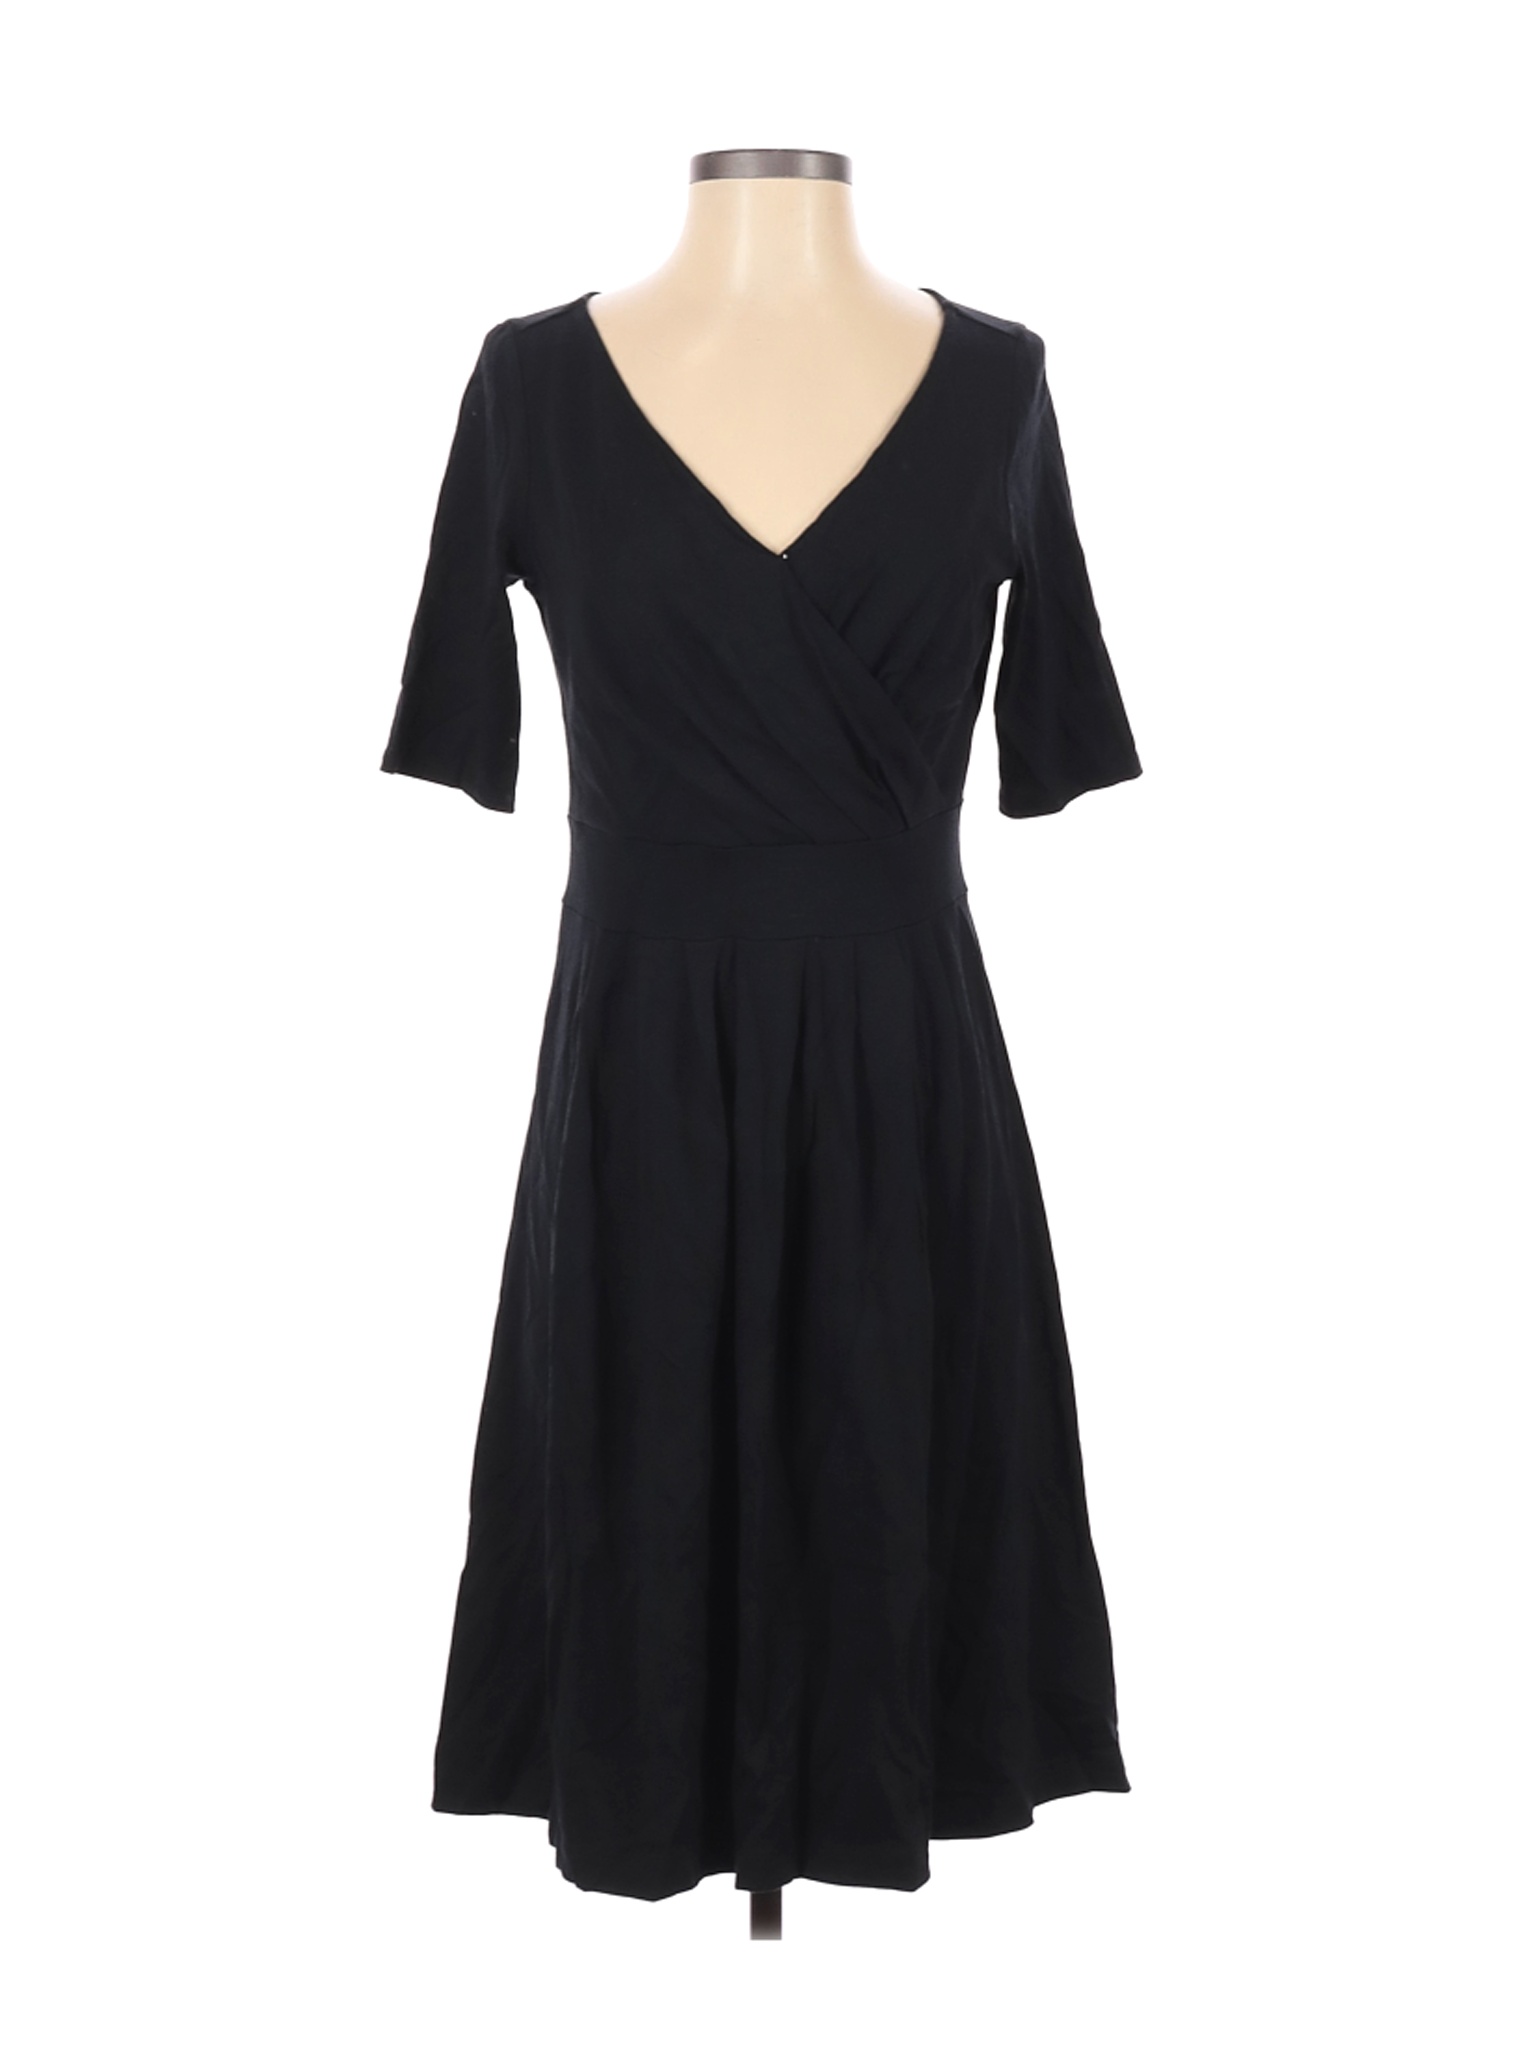 Lands' End Women Black Casual Dress XS | eBay